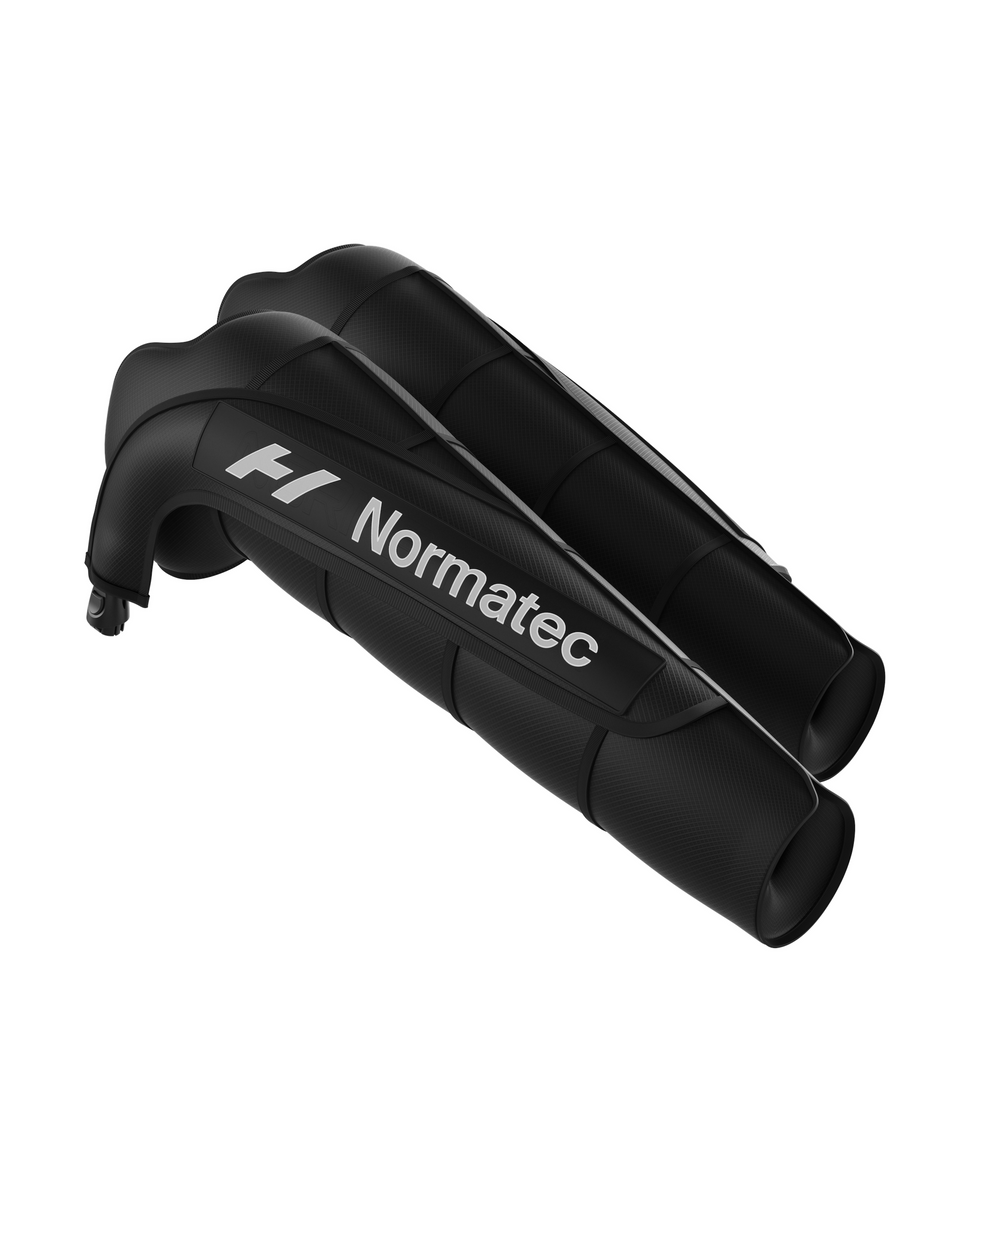 Normatec Arm Attachment 3.0